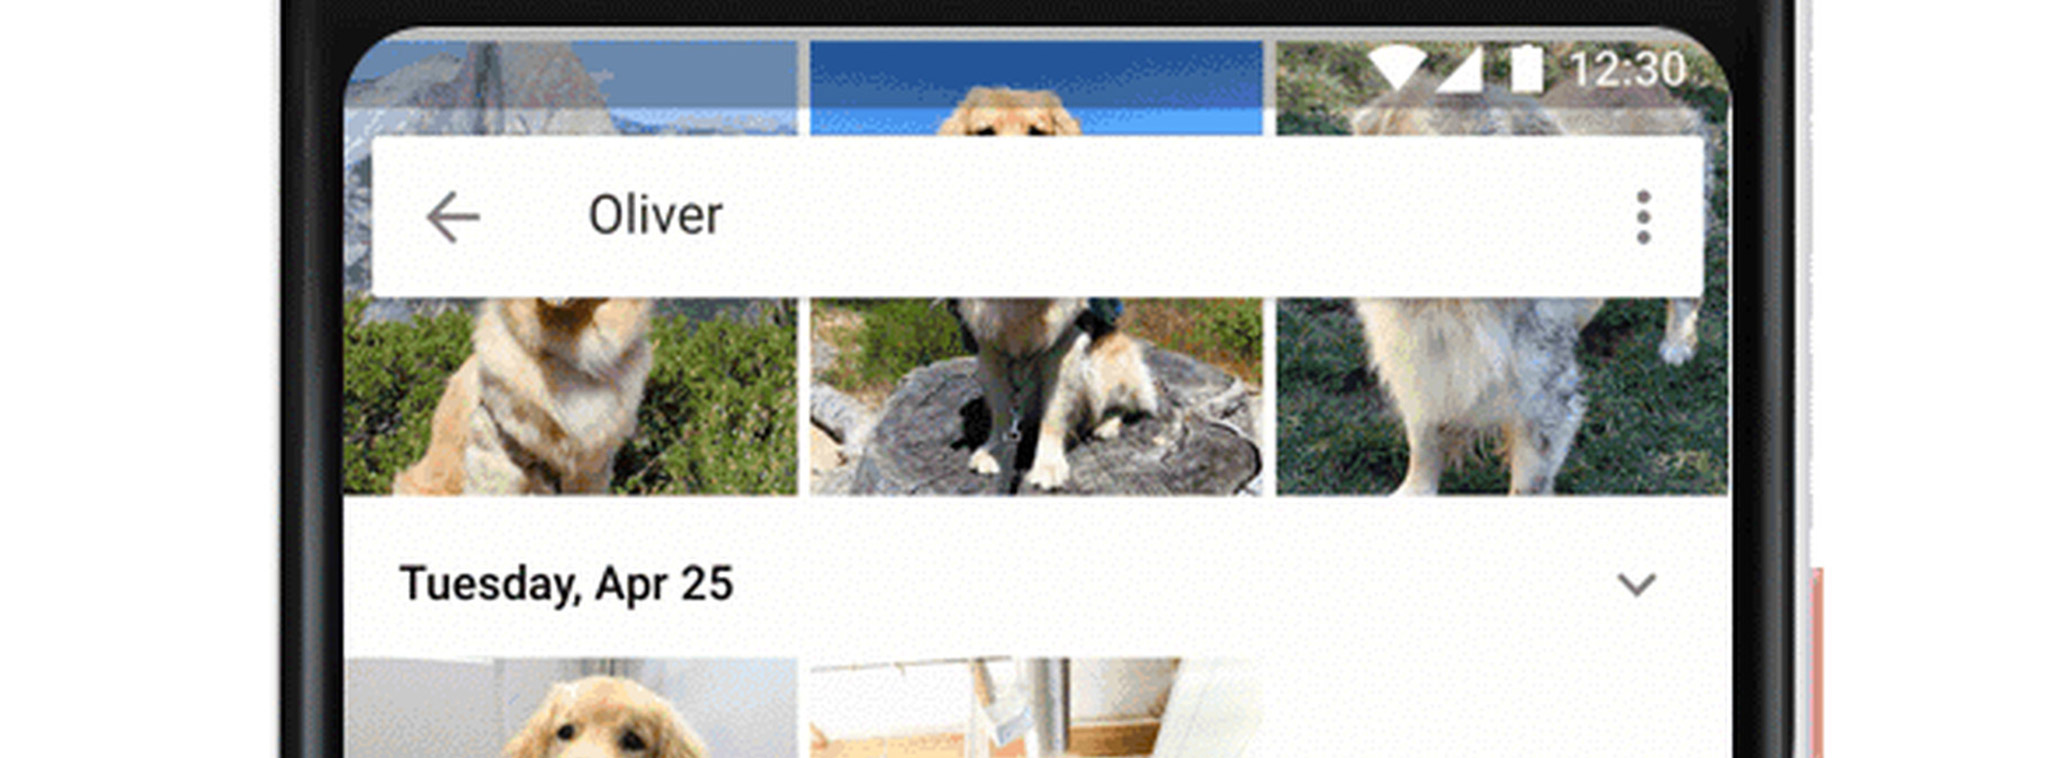 Google Photos đã có thể nhận diện thú nuôi, gom lại thành nhóm, tìm kiếm theo giống nòi